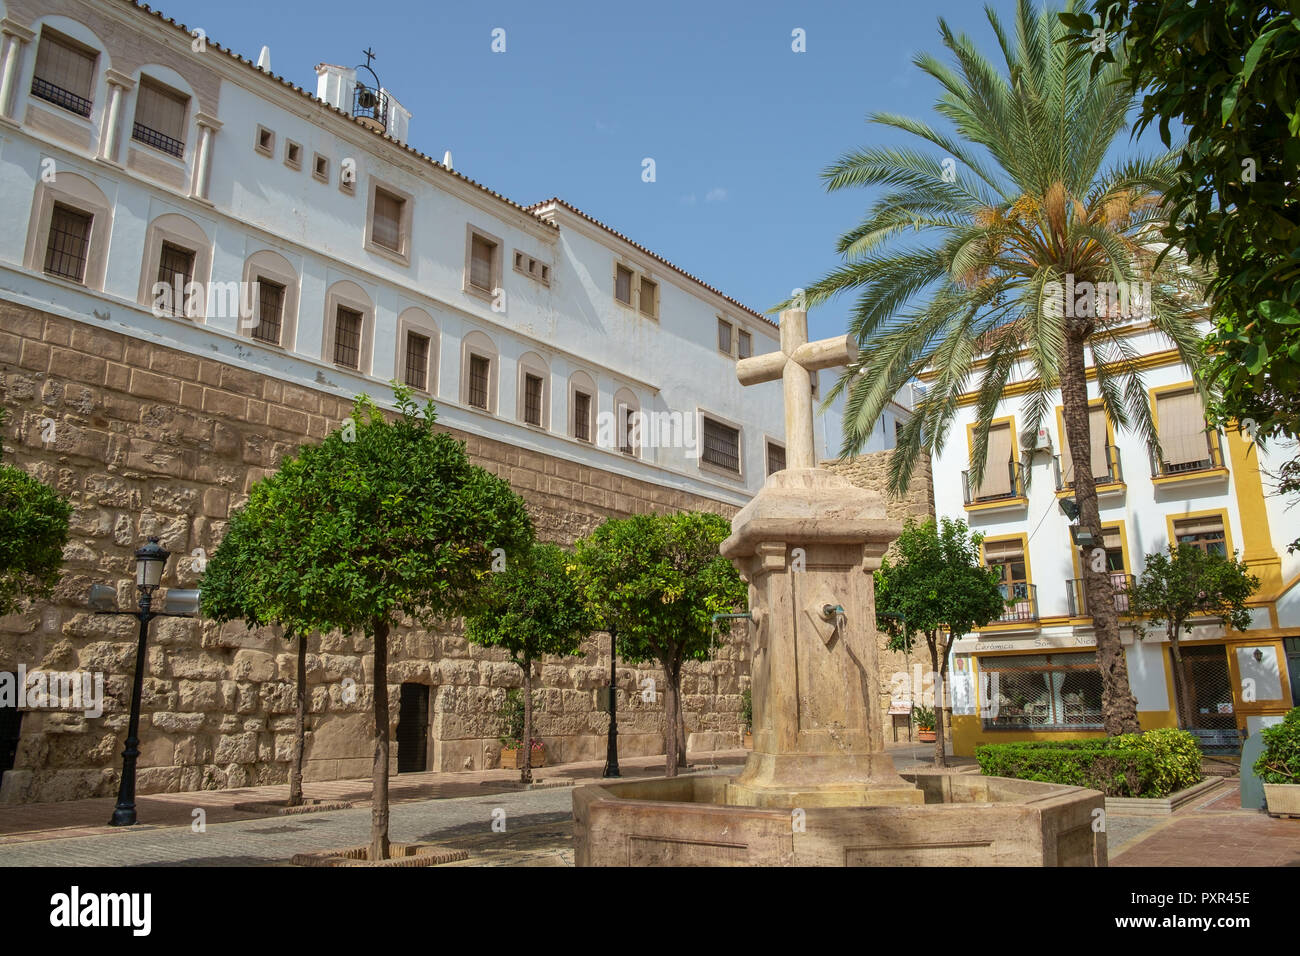 The Church Square (Plaze de la Iglesia), Marbella, Spain Stock Photo